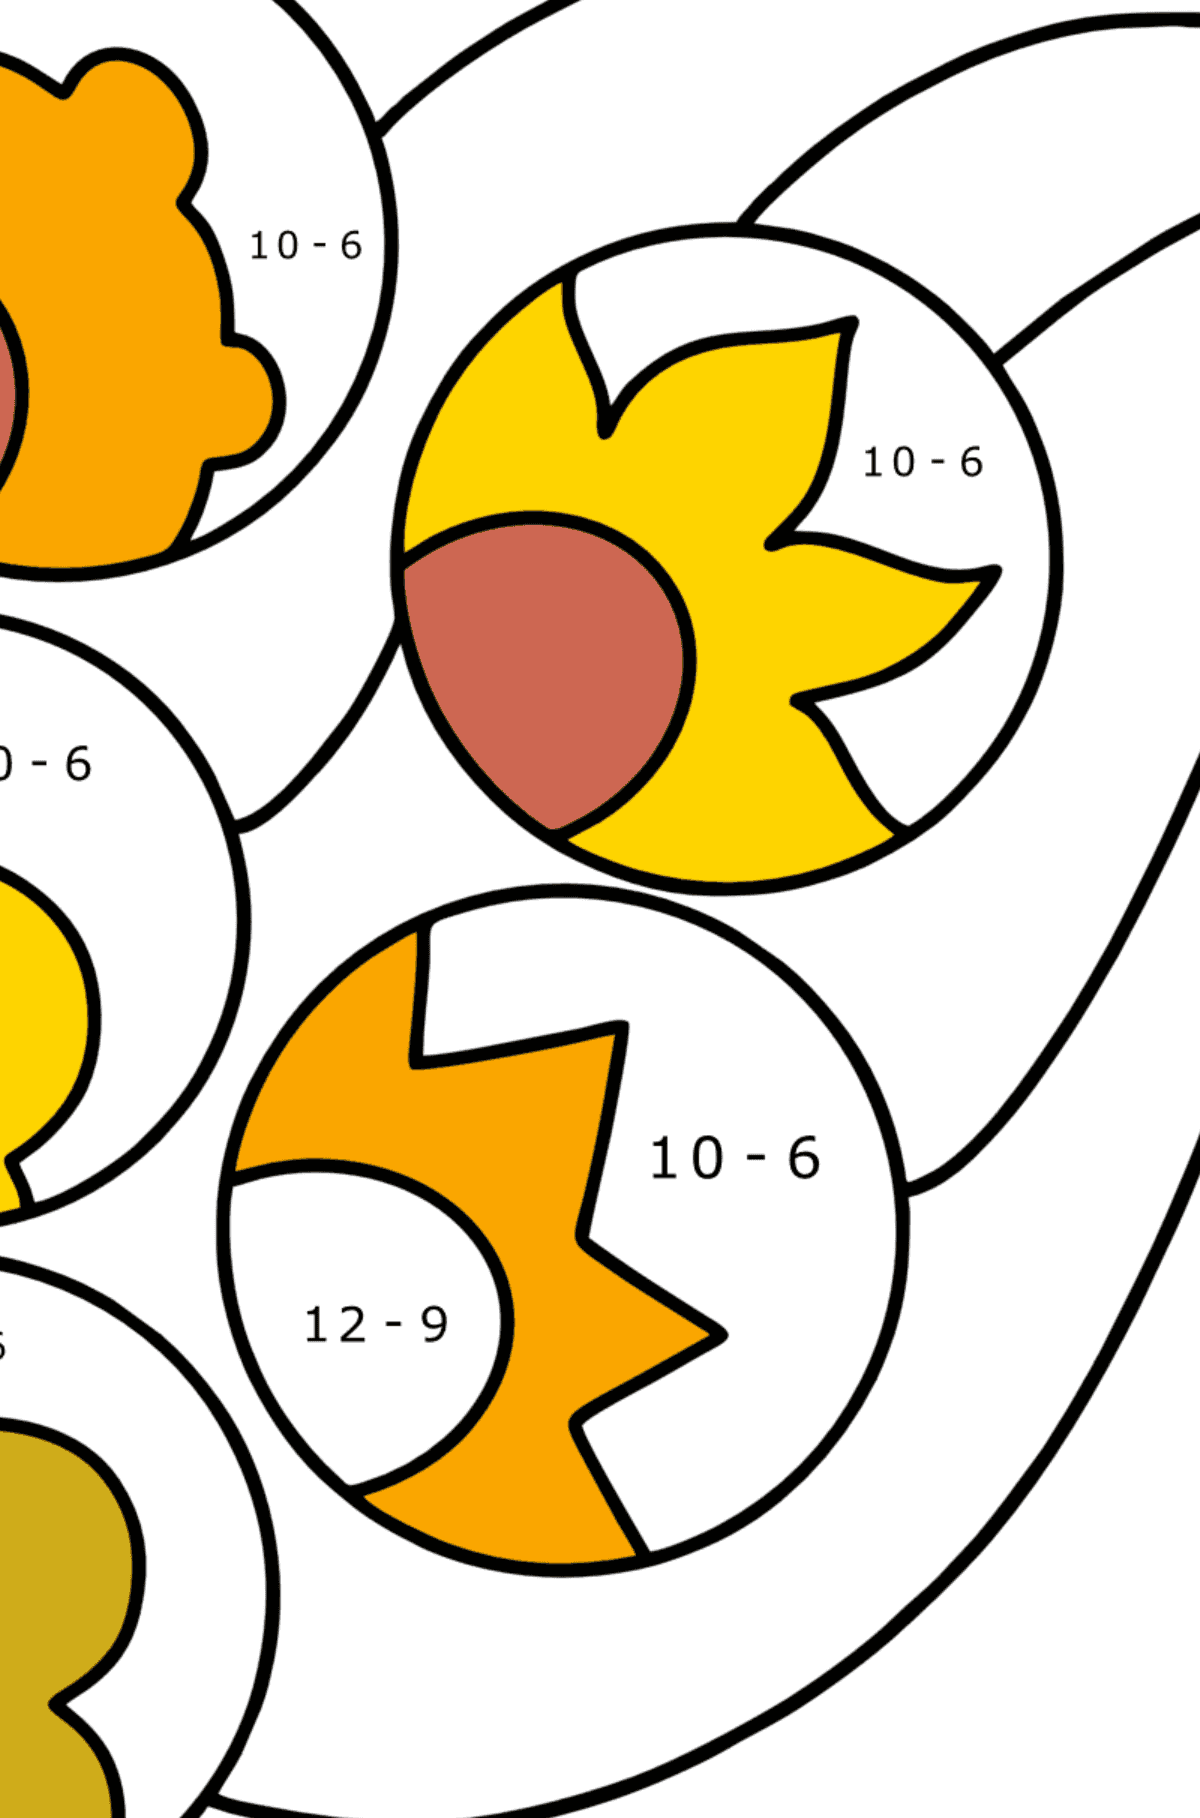 Ausmalbild Zentangle inspiriert - Mathe Ausmalbilder - Subtraktion für Kinder